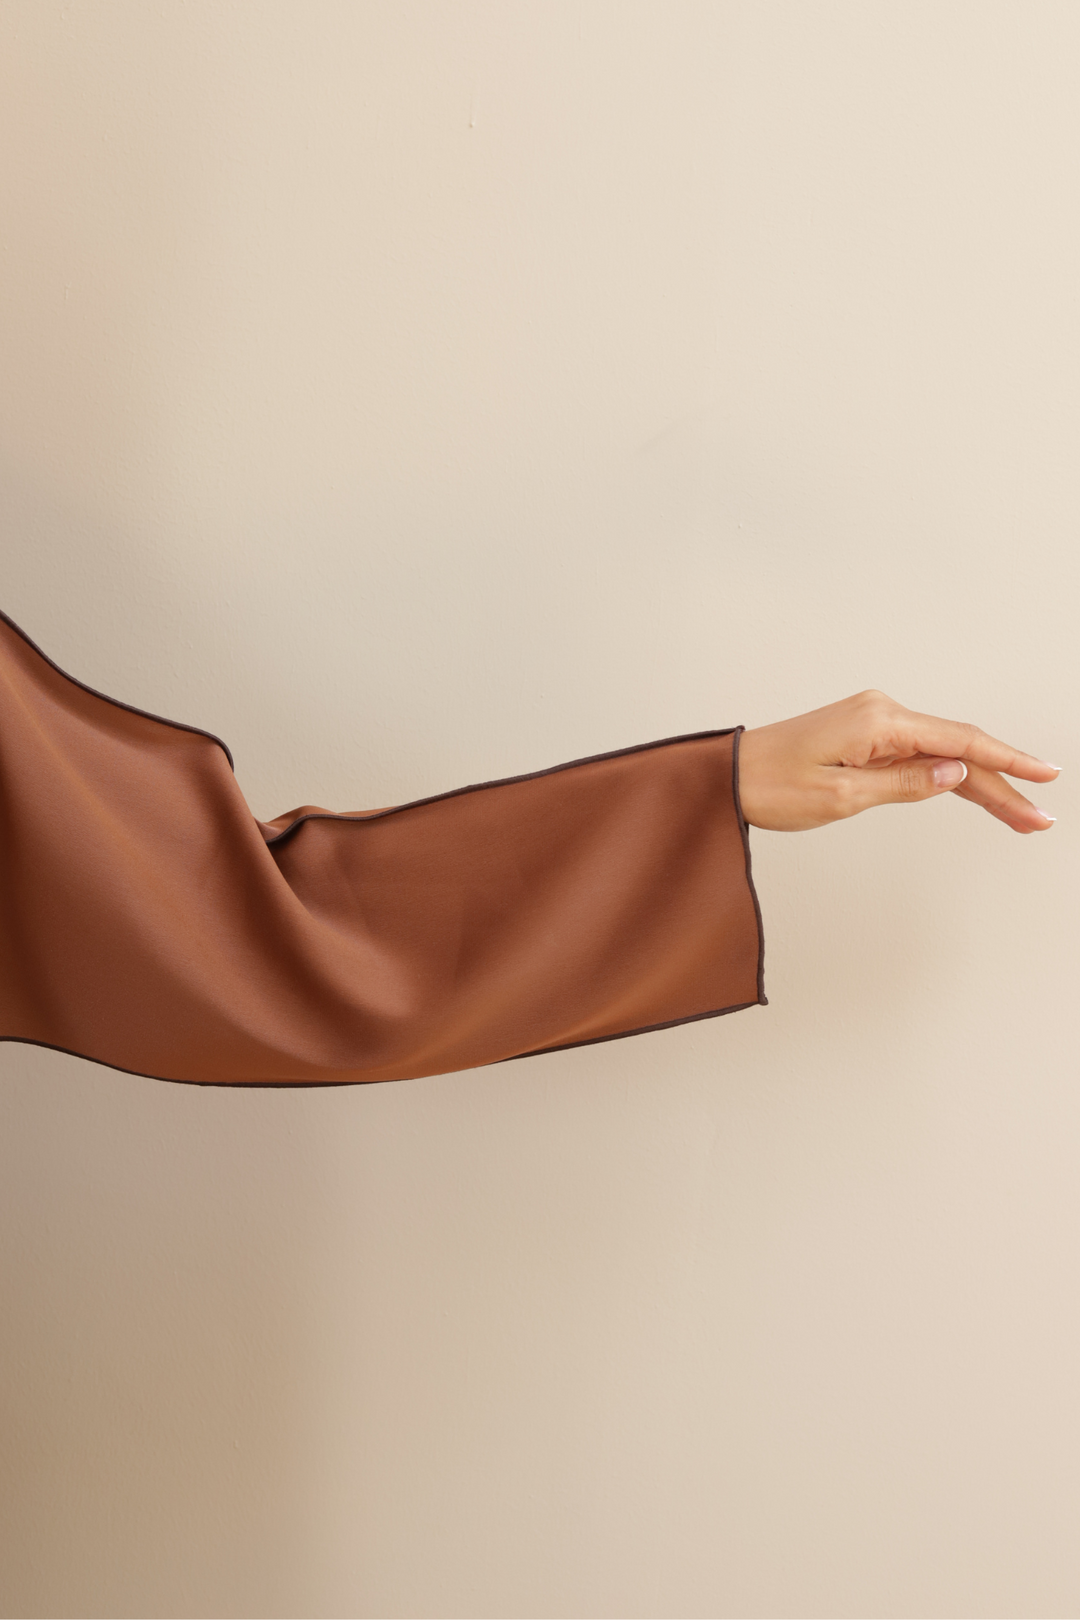 Basic Reversible (Brown Abaya) - Ready to Wear